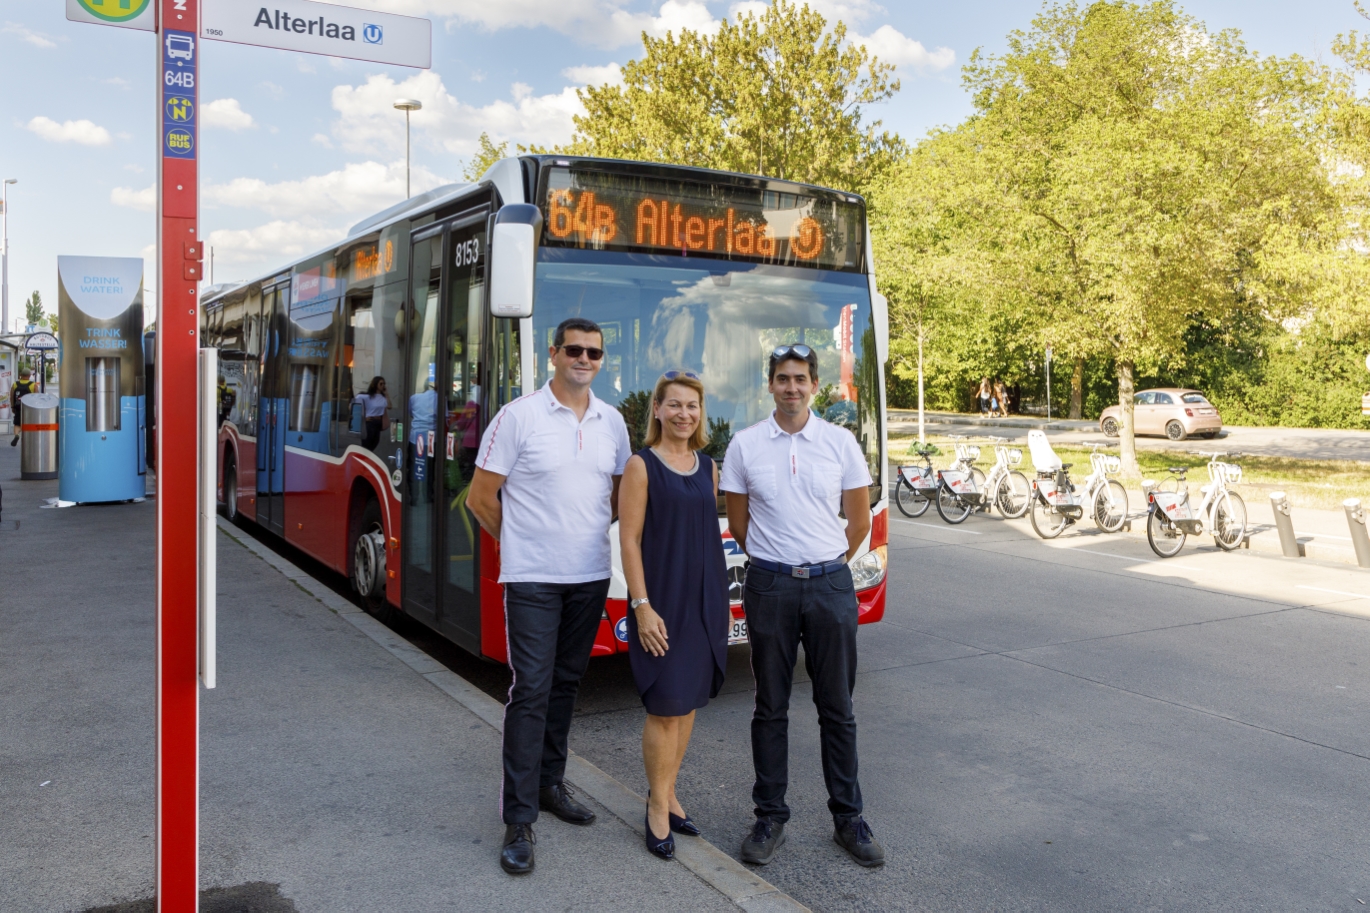 Die Wiener Linien erweitern ihr Busnetz in Liesing, um die Fahrgäste noch besser an U-, S- und Badner Bahn anzuschließen. Dafür werden zwei Buslinien neu geschaffen - 61B und 64B - und zwei bestehende Linien neu organisiert - 61A und 64A. Geschäftsführerin Alexandra Reinagl mit Mitarbeitern aus dem Busbetrieb